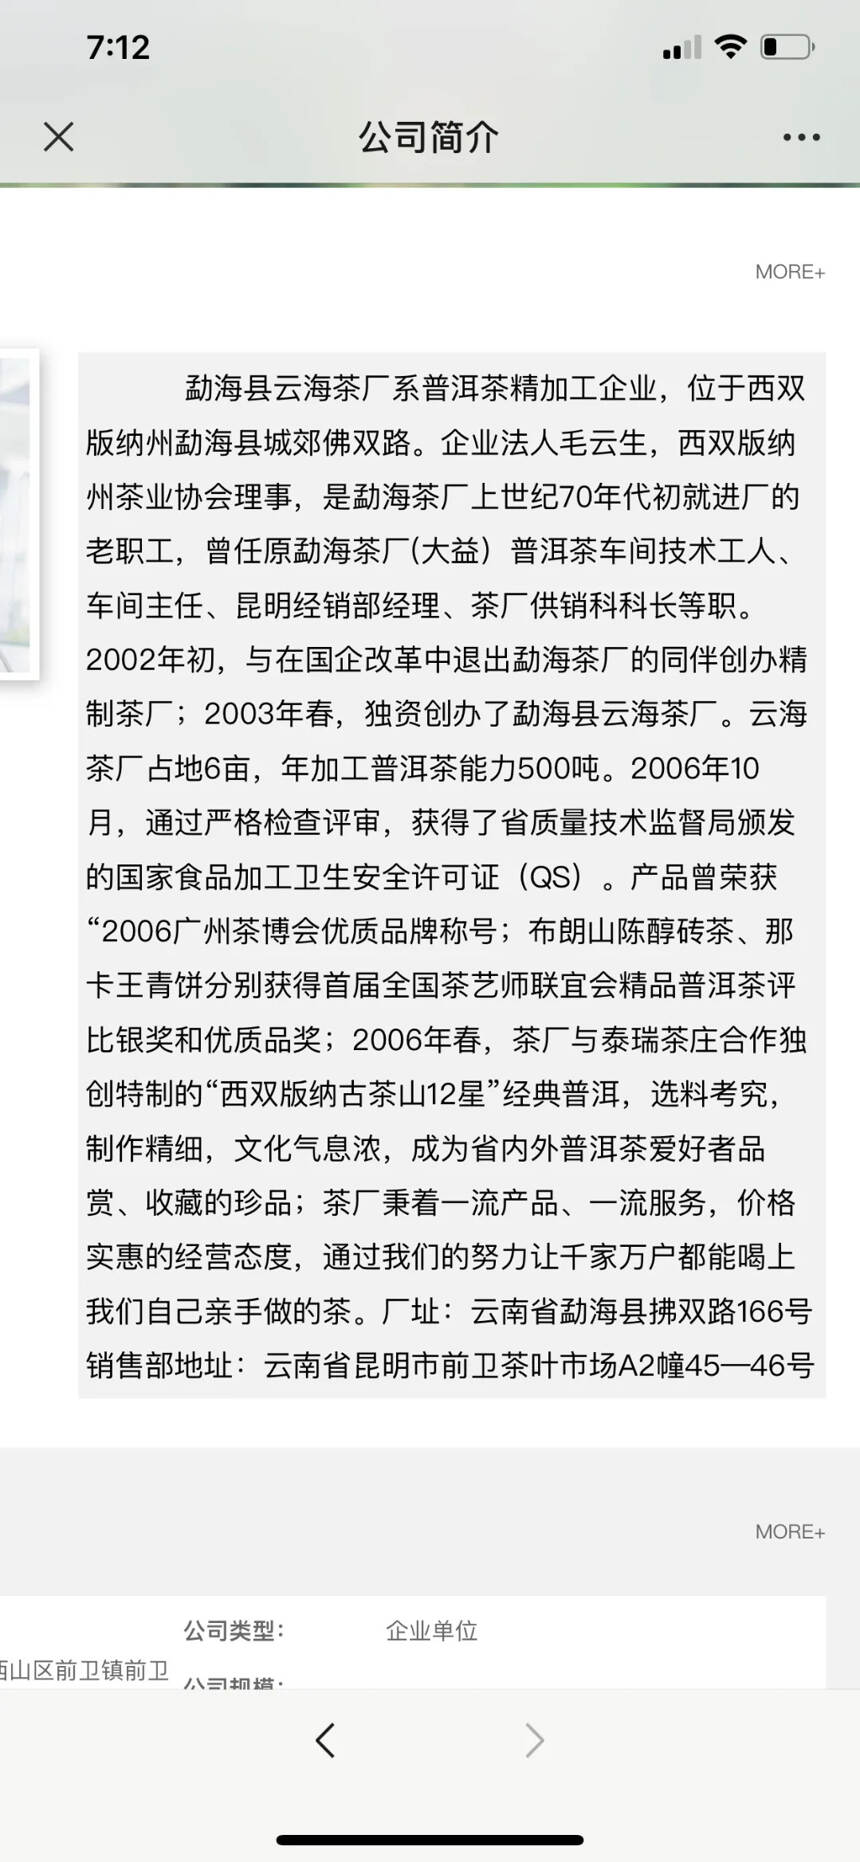 2003年勐海雲海茶厂 乔木生态熟普（白莲金针）
采